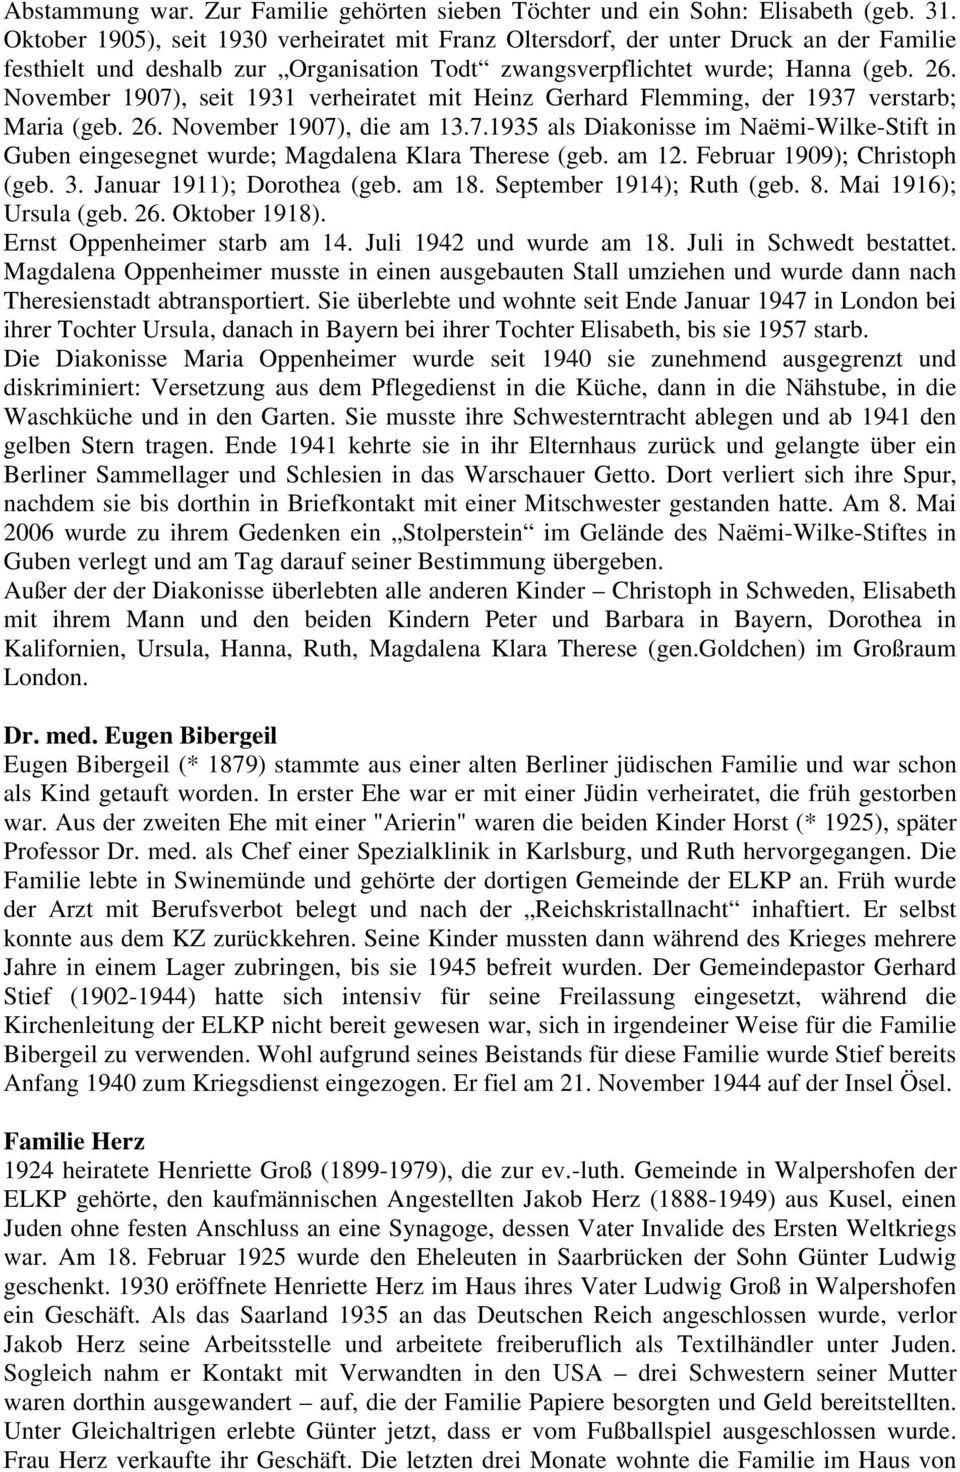 November 1907), seit 1931 verheiratet mit Heinz Gerhard Flemming, der 1937 verstarb; Maria (geb. 26. November 1907), die am 13.7.1935 als Diakonisse im Naëmi-Wilke-Stift in Guben eingesegnet wurde; Magdalena Klara Therese (geb.